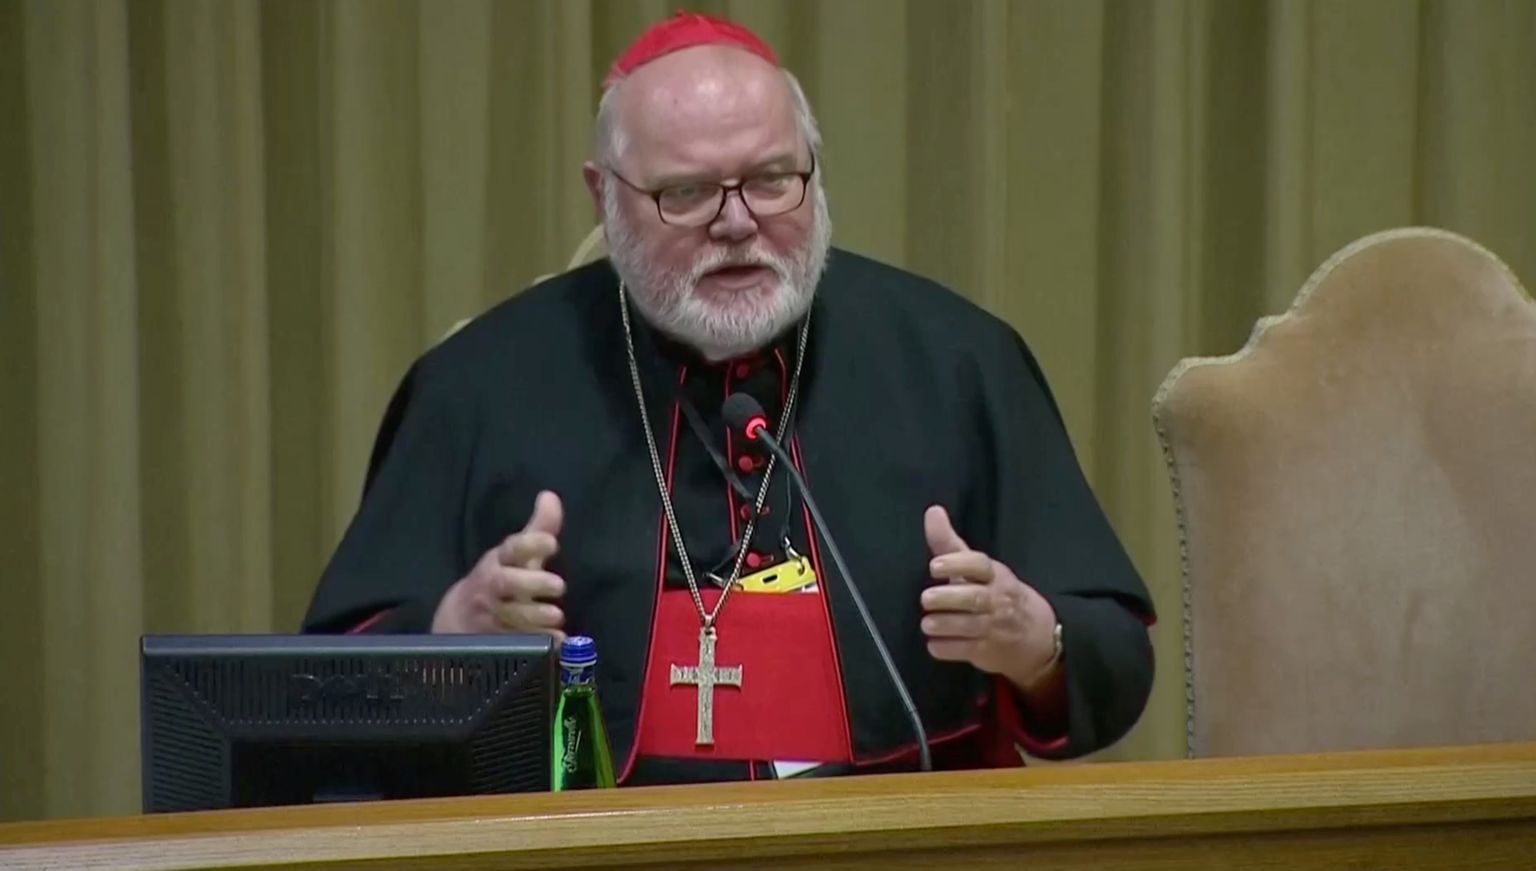 Saksa kardinal Reinhard Marx kõnelemas täna Vatikanis jätkuval katoliku kirku lapsepilastamise probleemiga tegeleval kogunemisel kõrgetele krikujuhtidele.